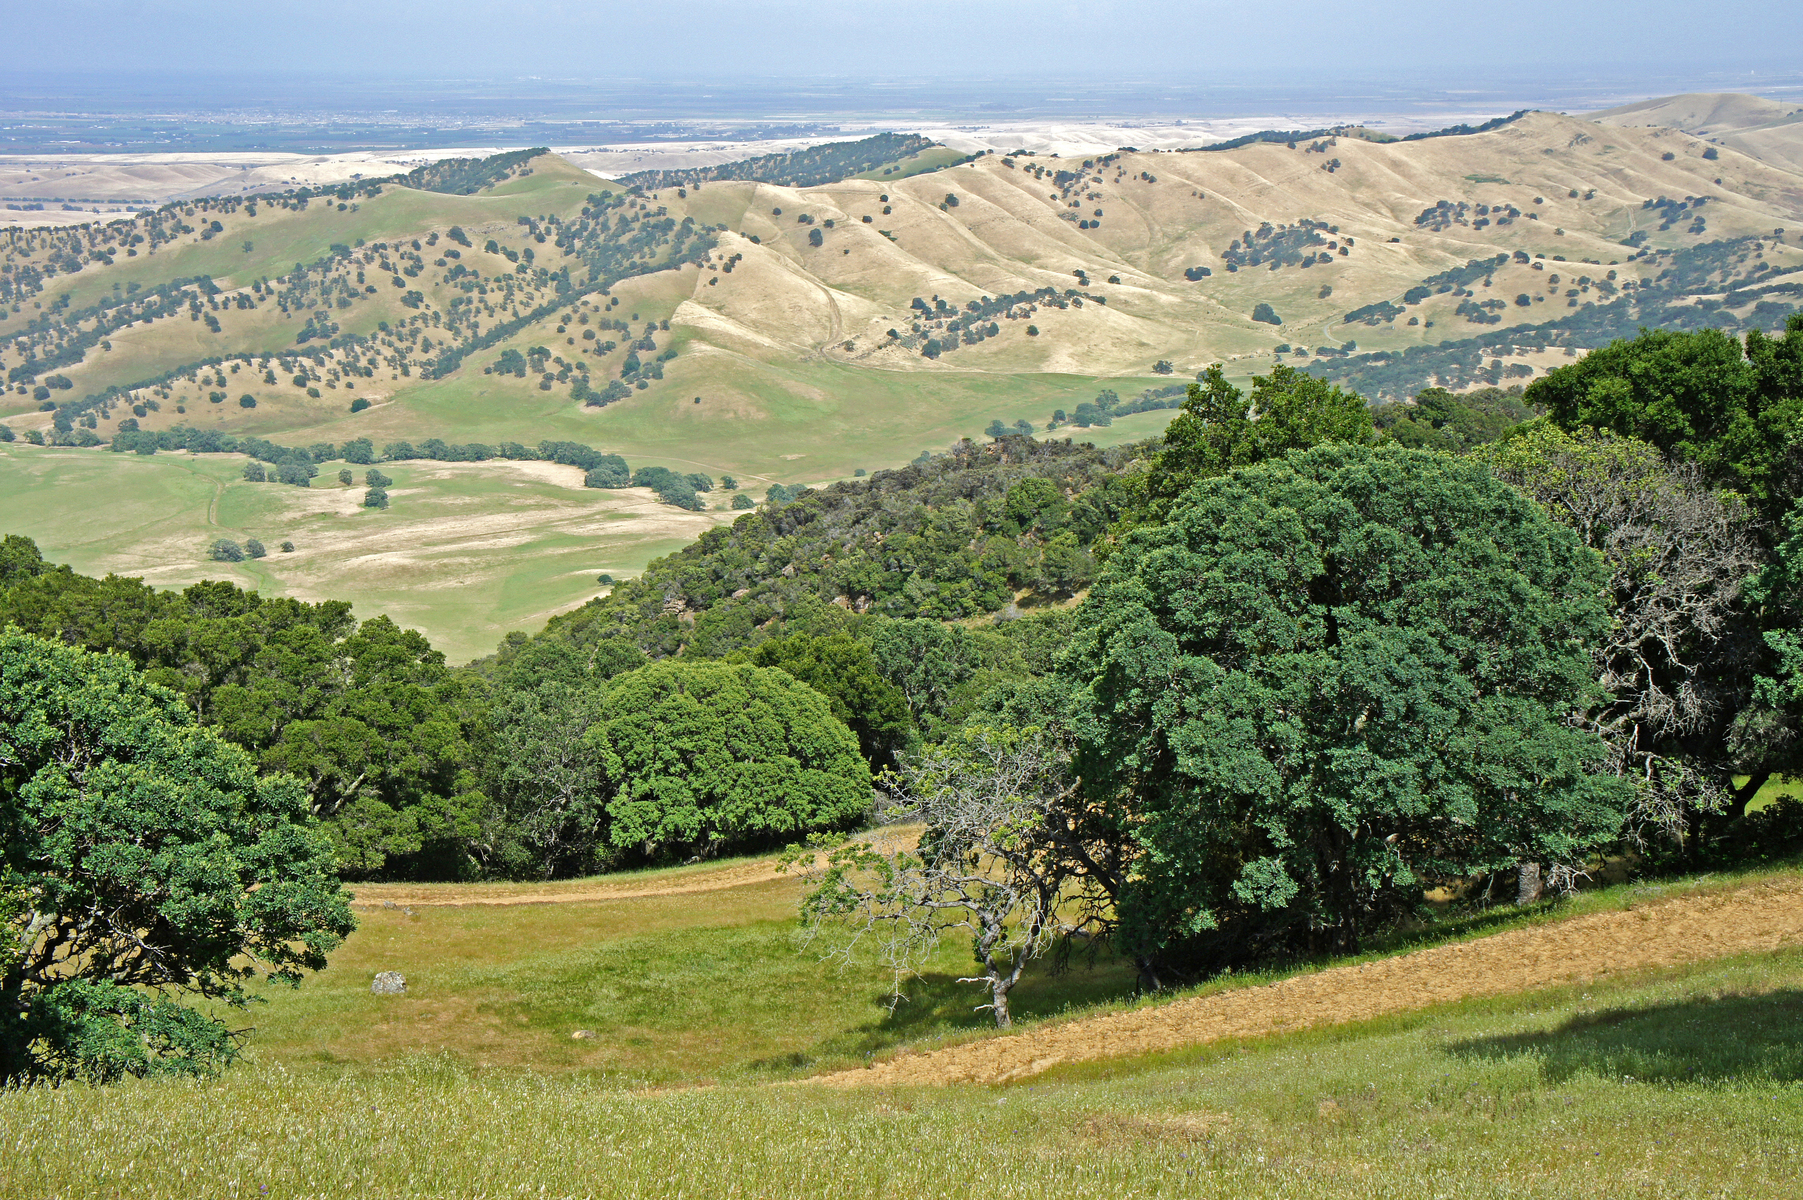 Morgan Territory, north of Livermore, California